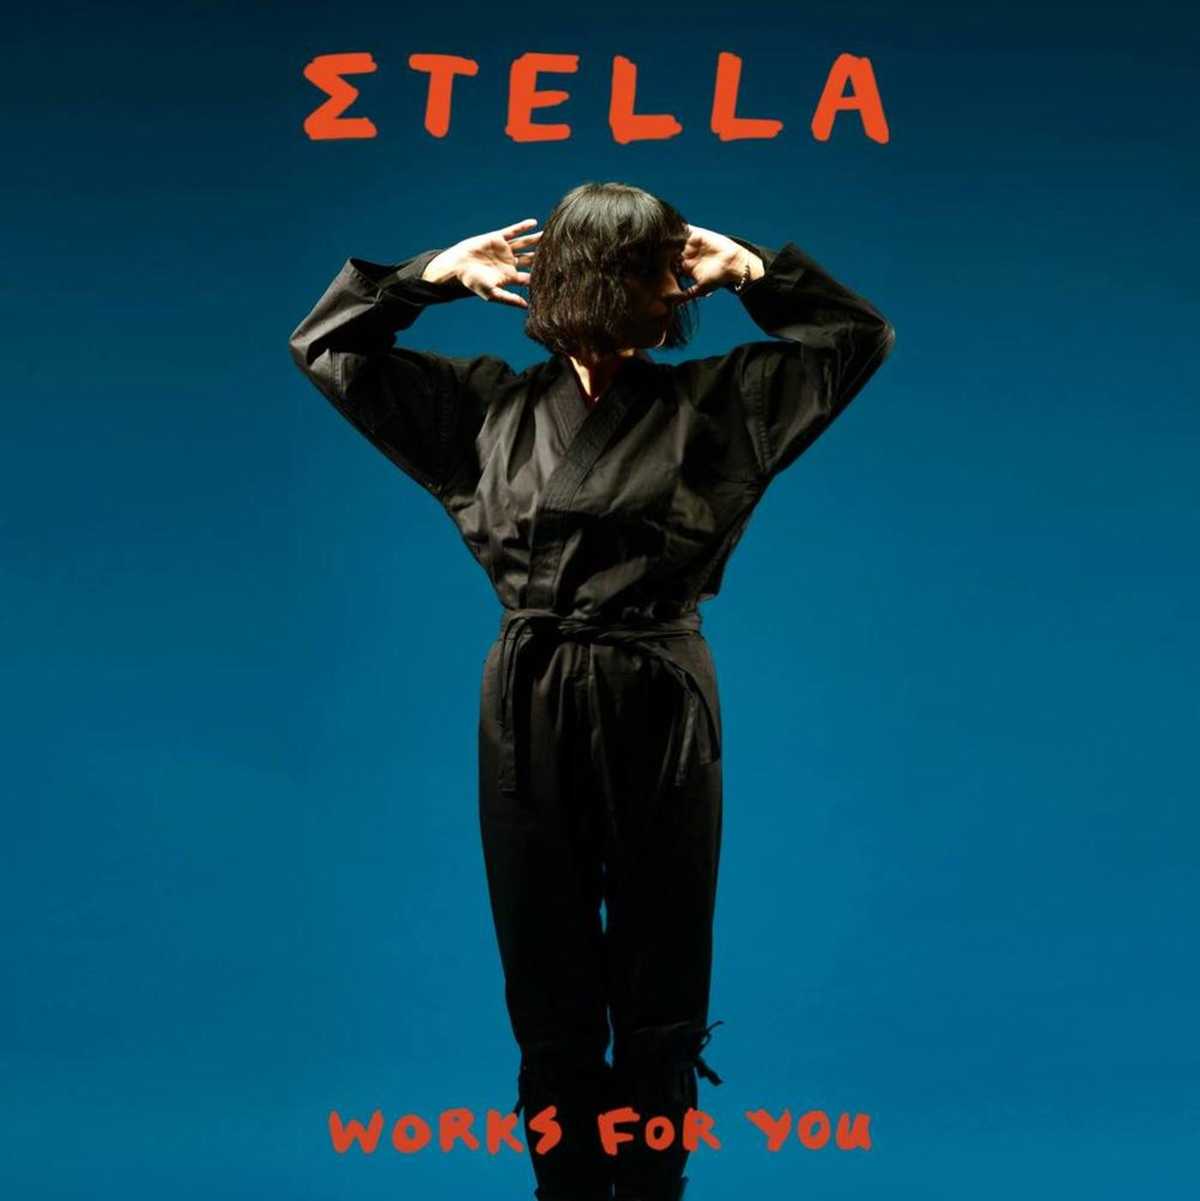 Σtella-Works-For-You-stella